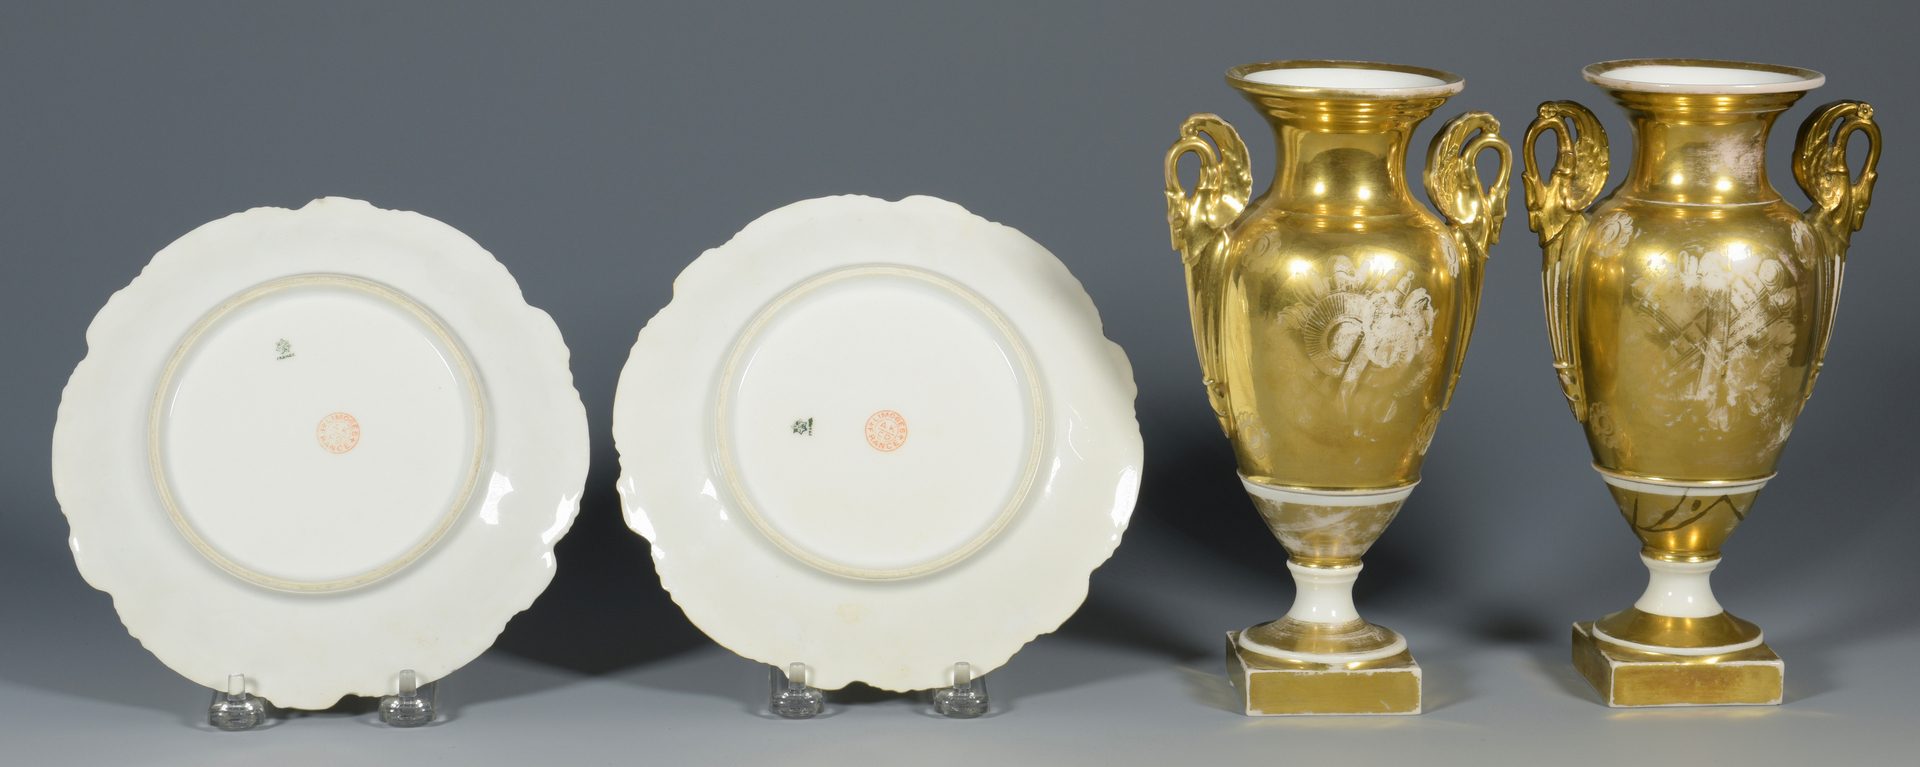 Lot 700: 7 European Porcelain items